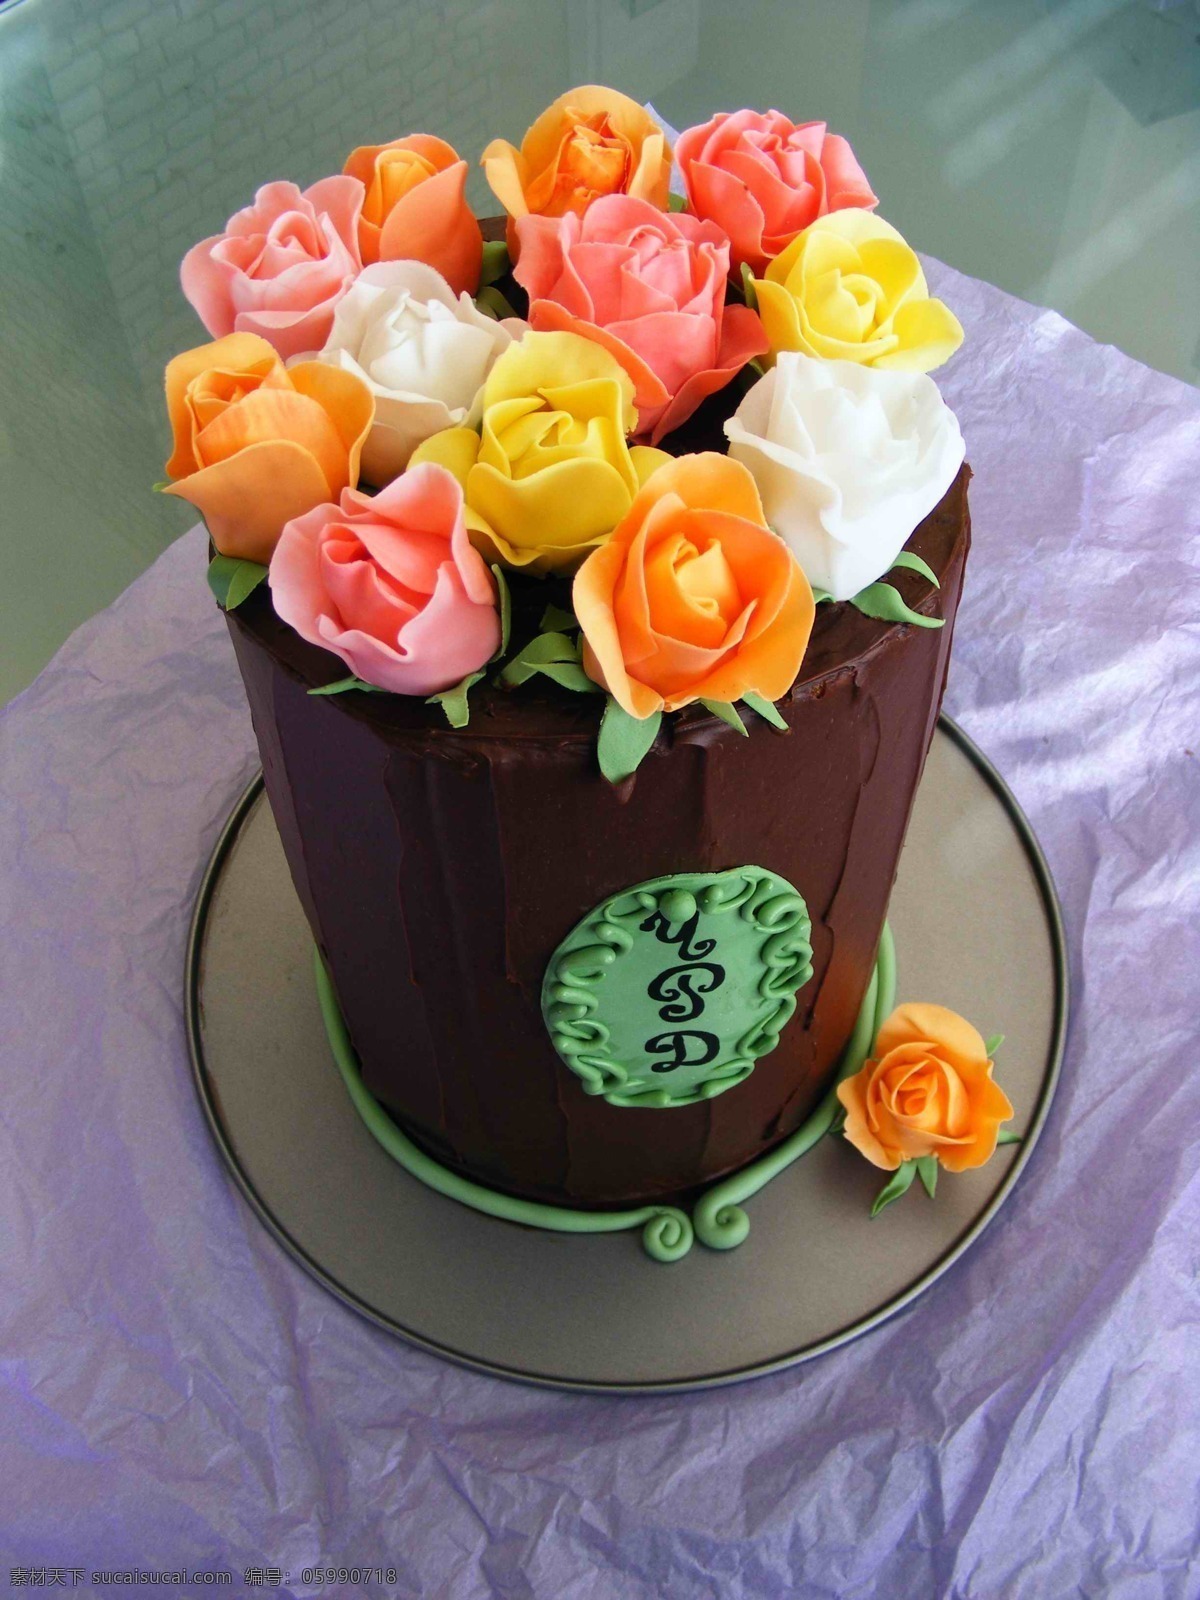 生日玫瑰蛋糕 生日蛋糕 蛋糕 玫瑰蛋糕 点心 精致 奶油蛋糕 蜡烛蛋糕 创意蛋糕 造型蛋糕 美味蛋糕 巧克力蛋糕 美味 精致蛋糕 甜点 高档蛋糕 彩色蛋糕 西餐美食 餐饮美食